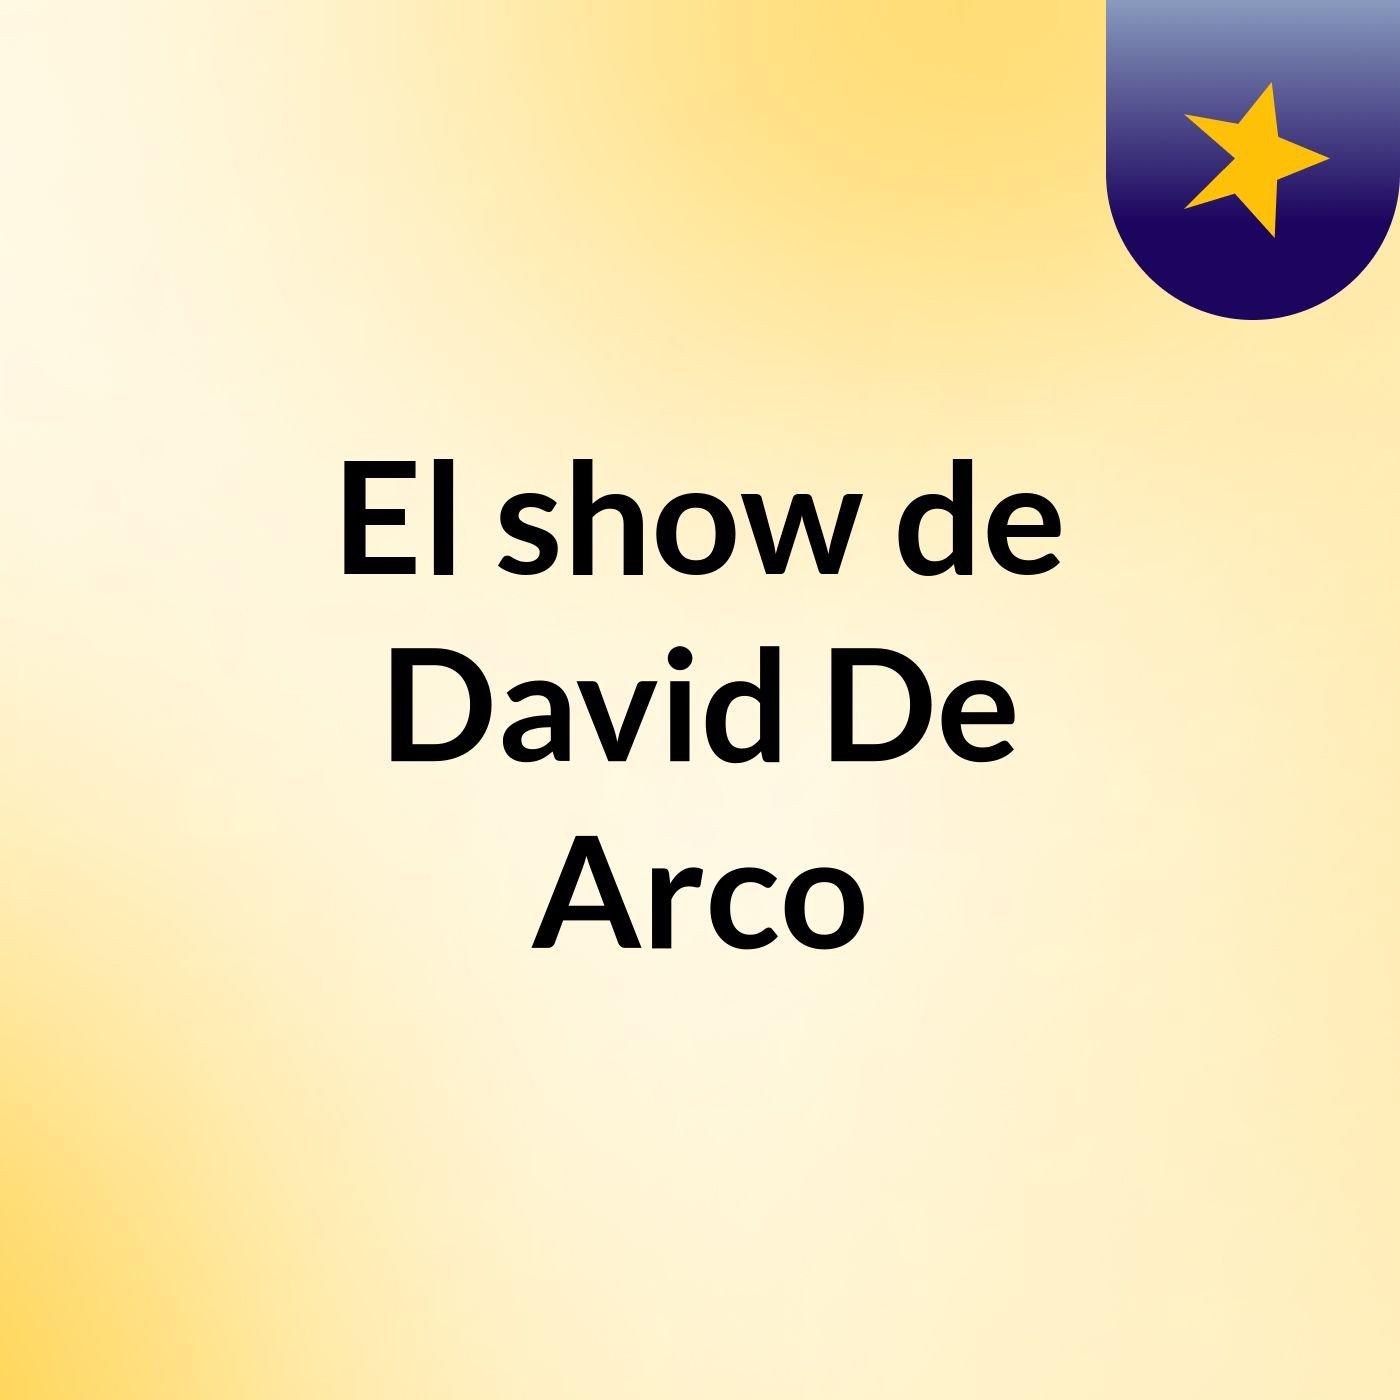 El show de David De Arco